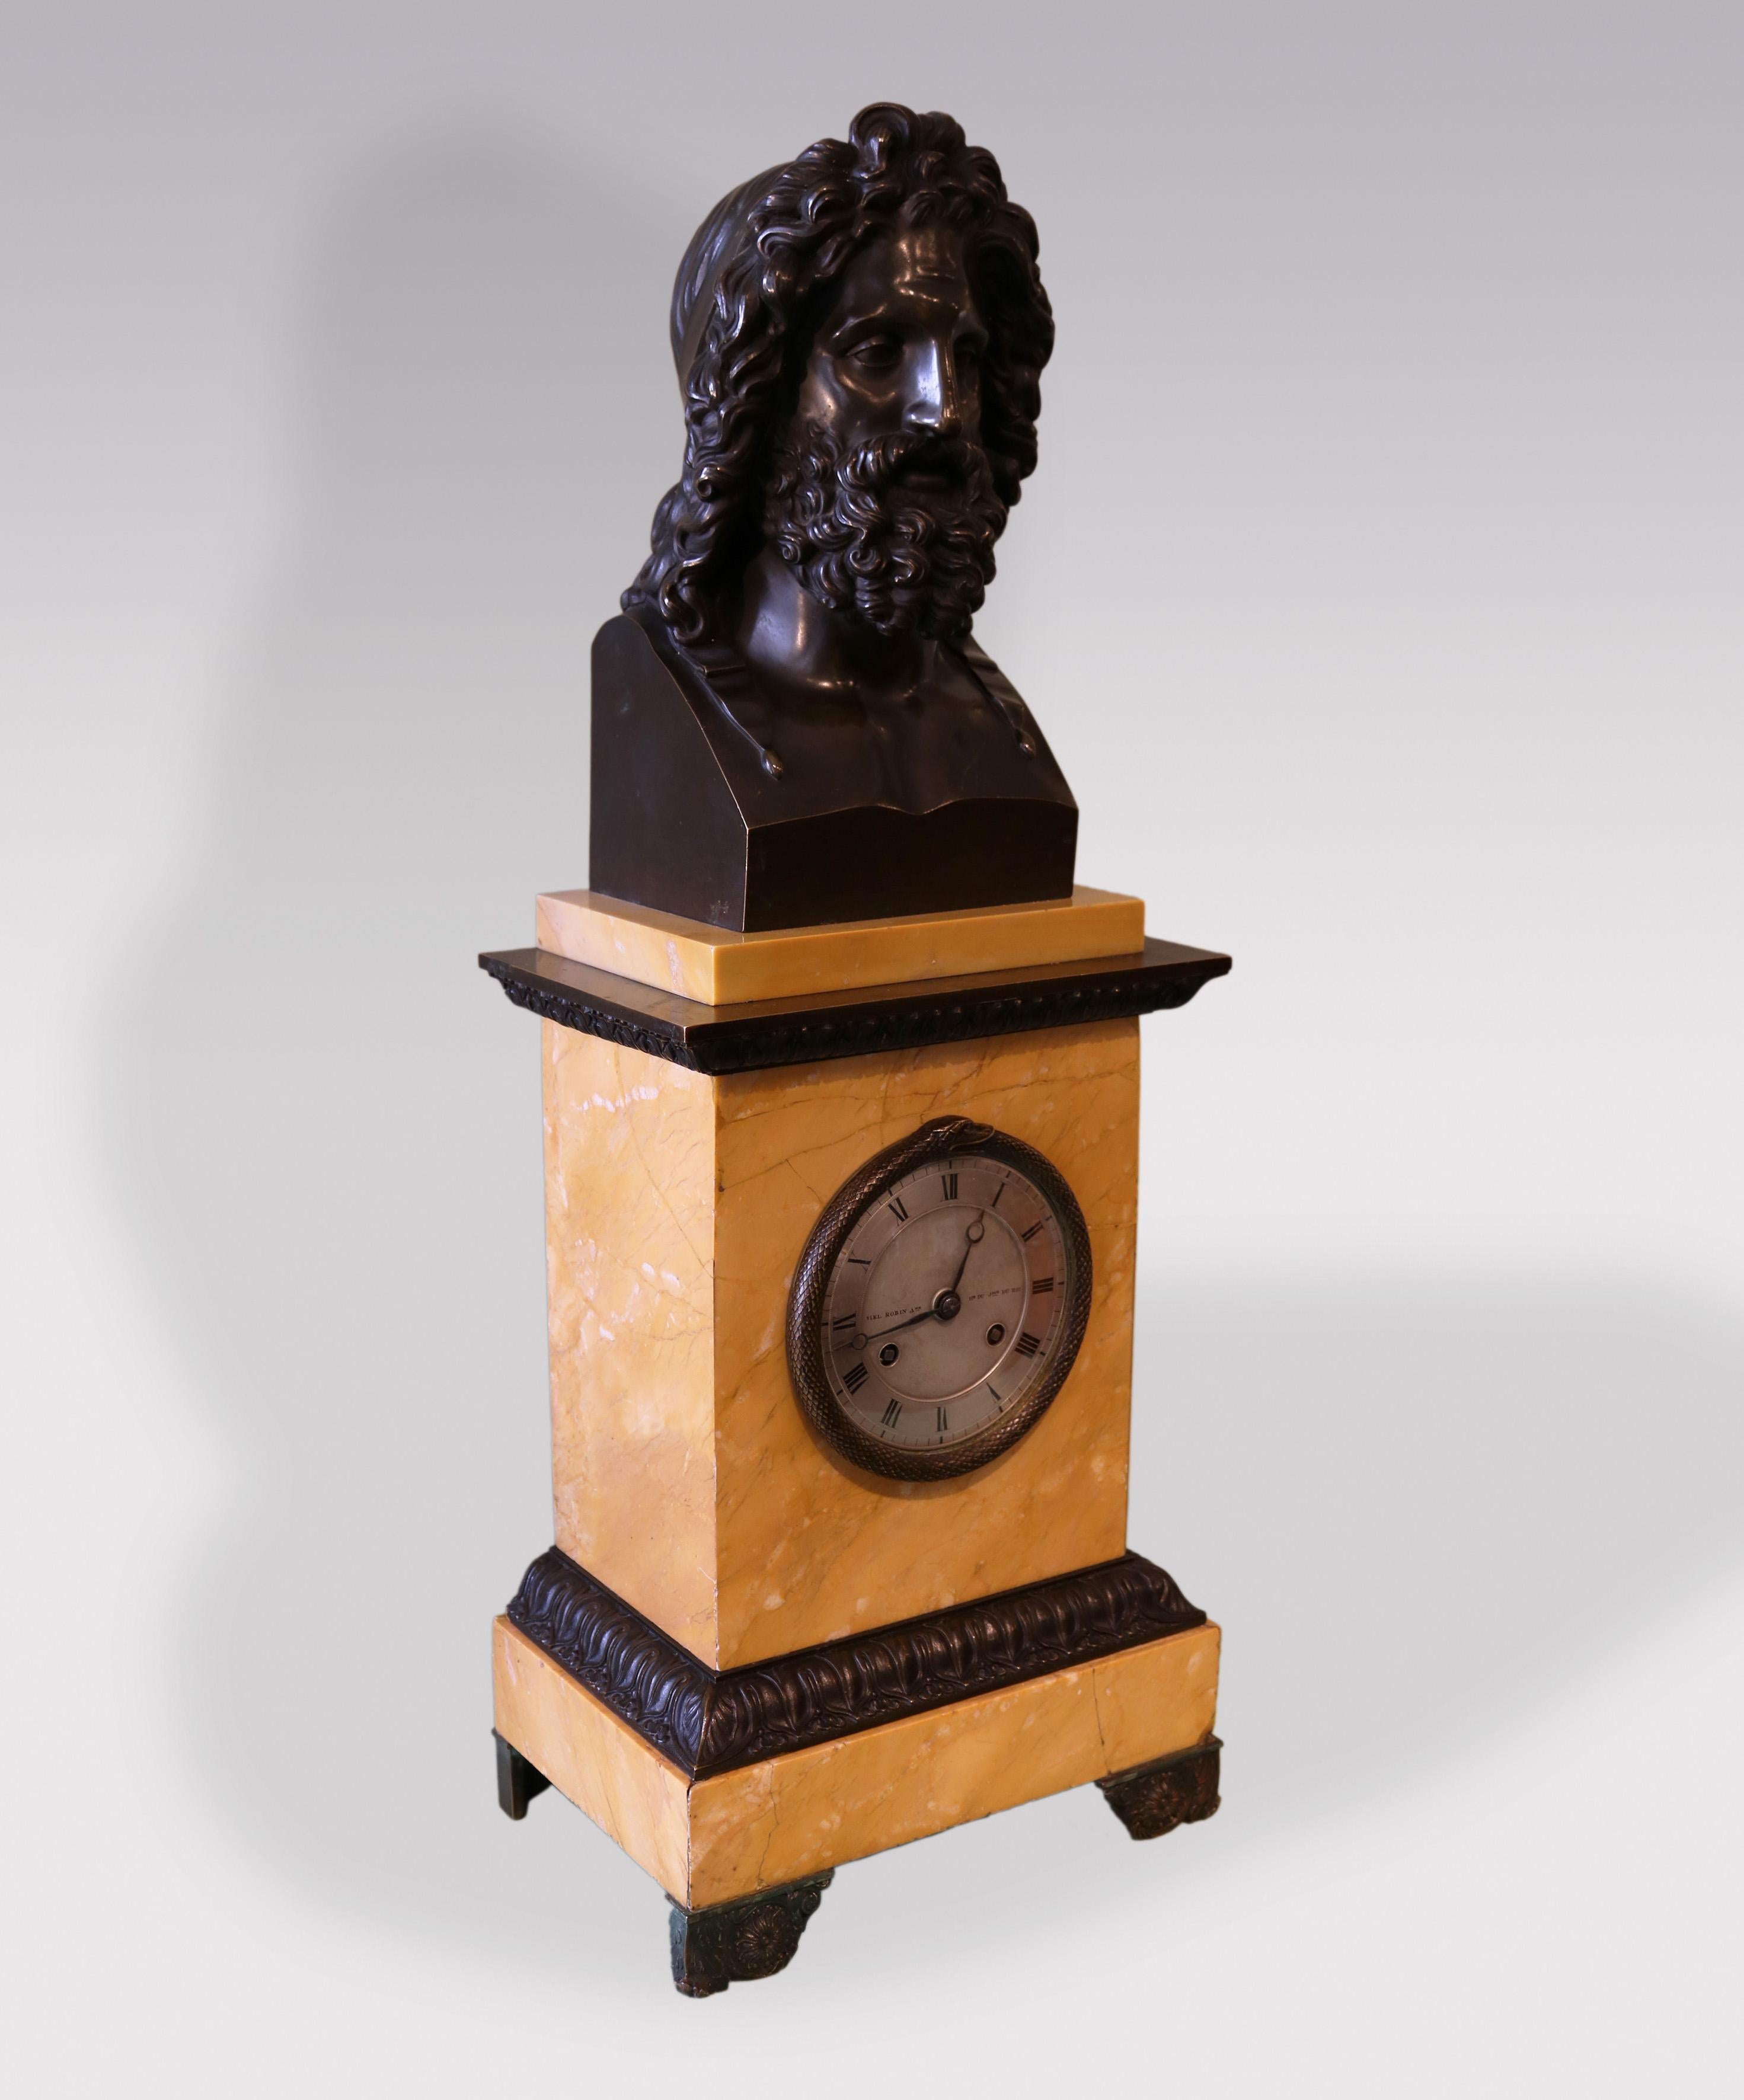 Une grande et impressionnante horloge du début du 19e siècle en bronze français et marbre de Sienne, surmontée d'un buste de Jupiter bien coulé.  L'horloge, avec un mouvement à sonnerie de 8 jours et un cadran en argent avec une lunette en forme de